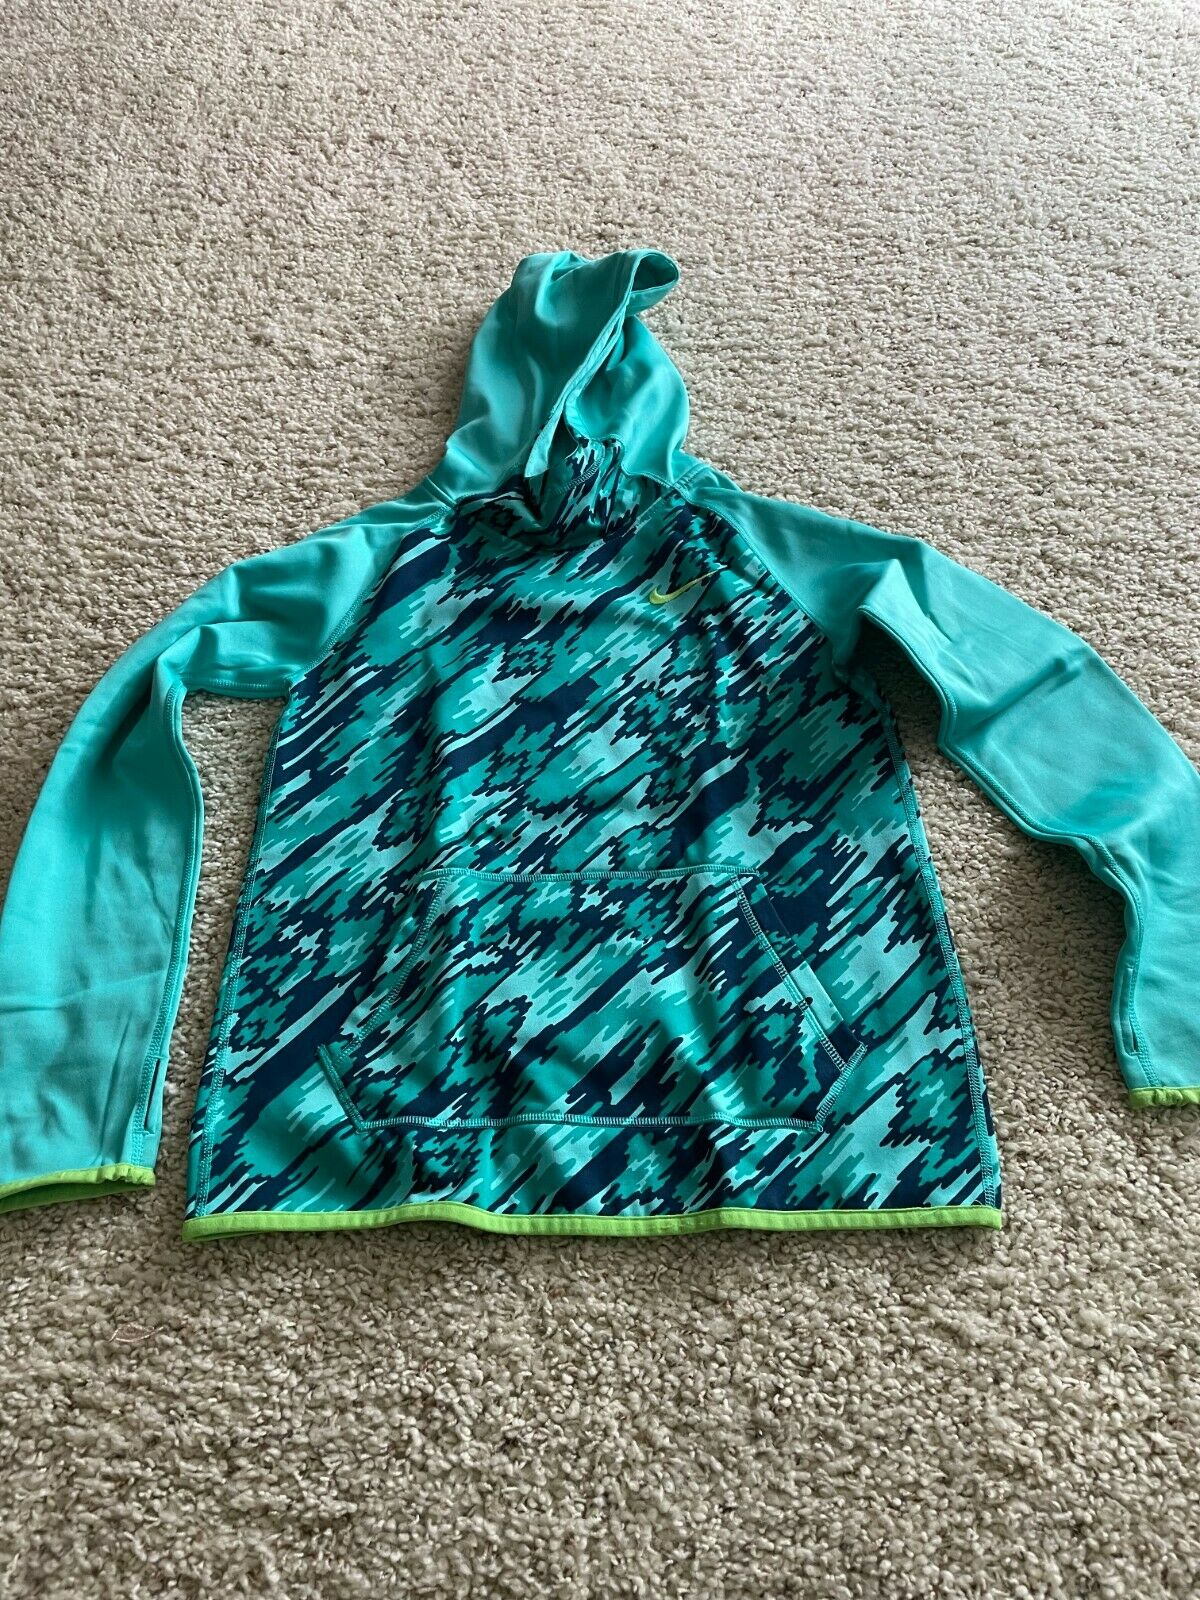 Girl's Nike Hoodie Sweatshirt - Size Large